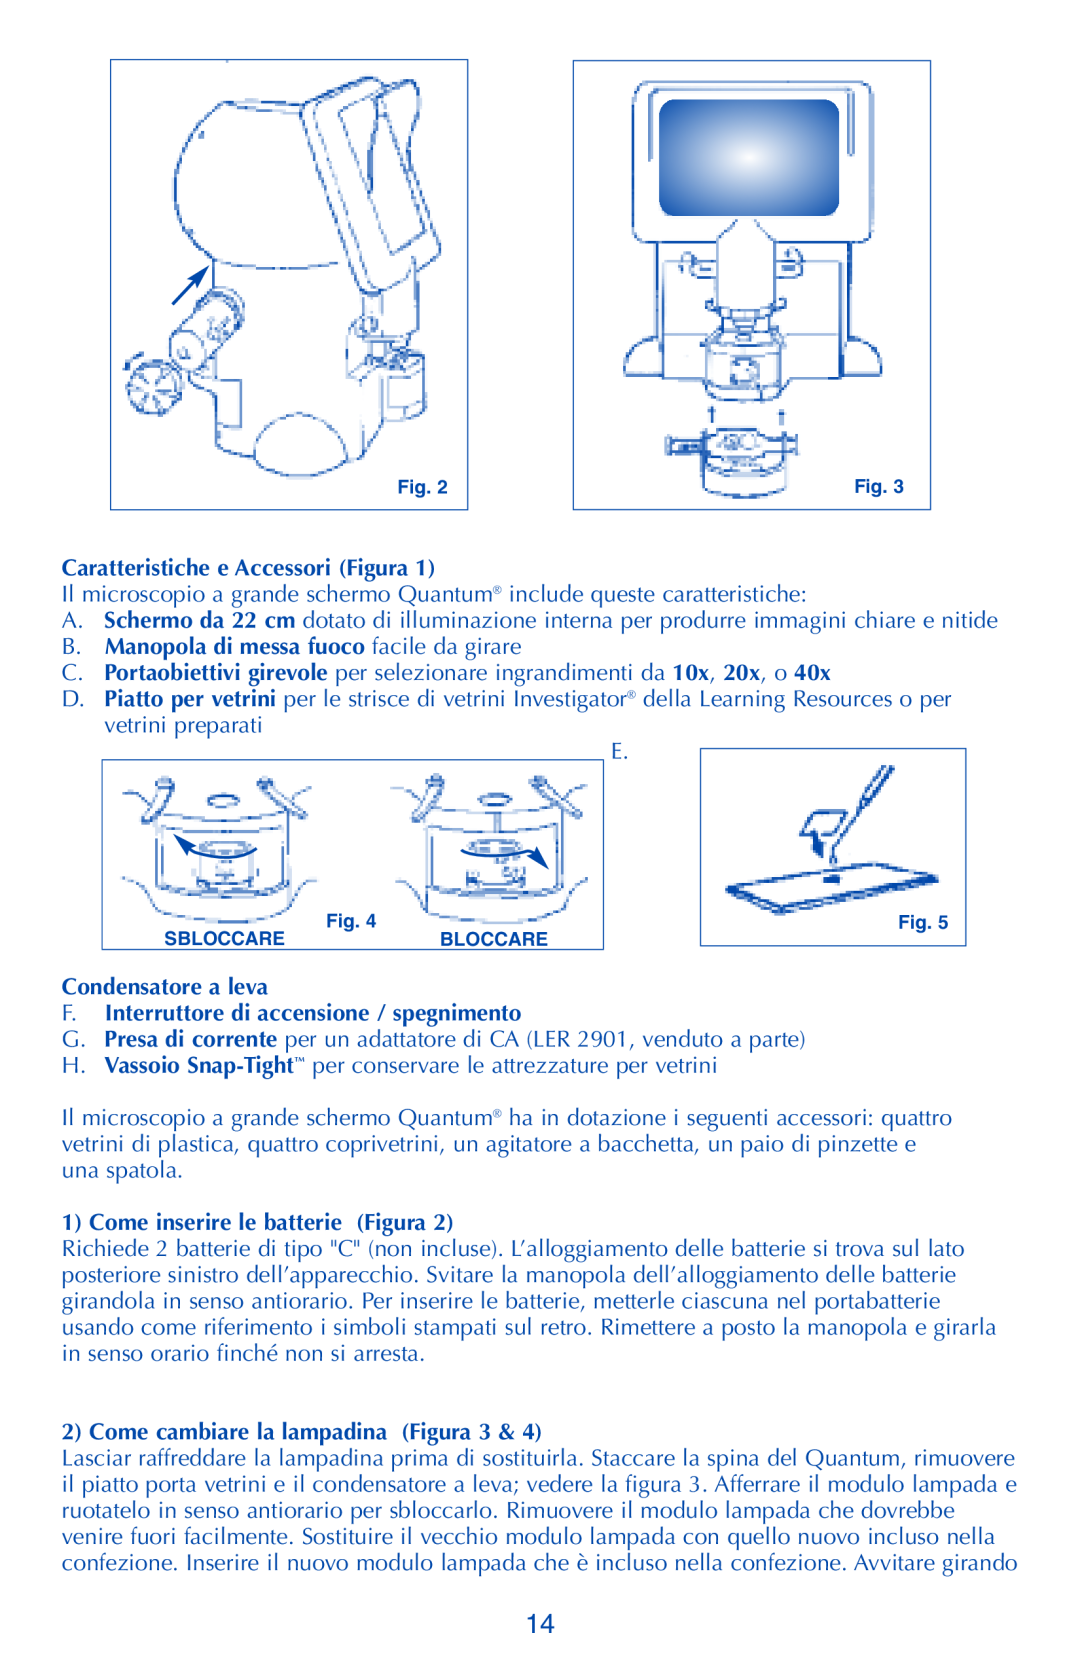 Quantum LER 2900 manual Caratteristiche e Accessori Figura, B. Manopola di messa fuoco facile da girare 